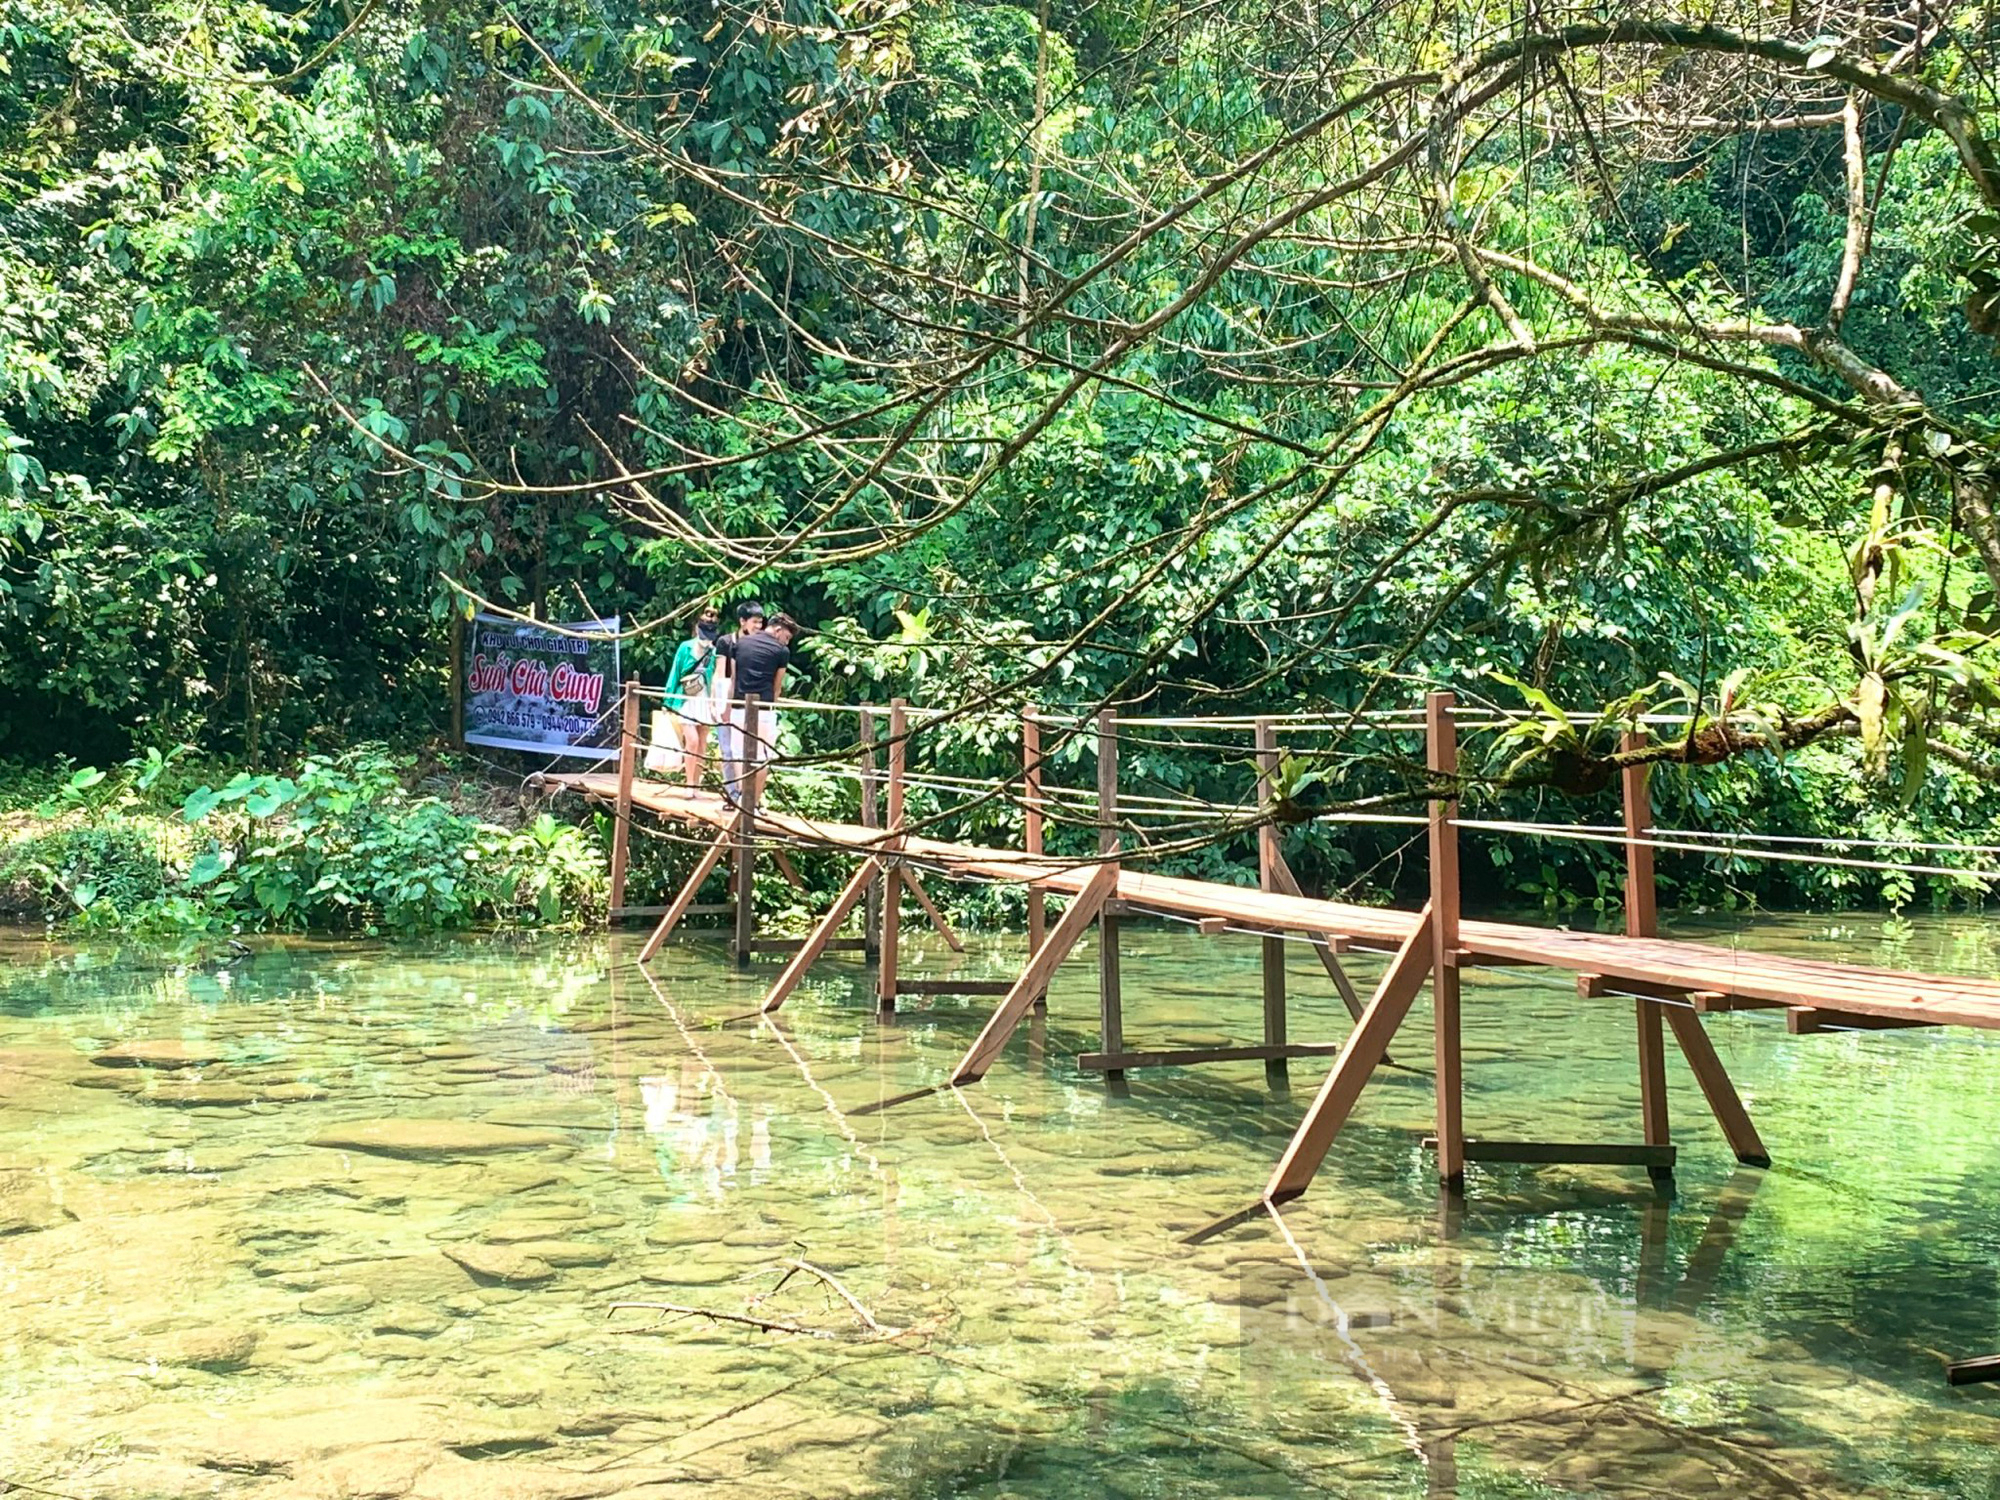 Vụ khu vui chơi giải trí không phép giữa rừng phòng hộ ở Quảng Bình: Dừng hoạt động kinh doanh du lịch - Ảnh 1.